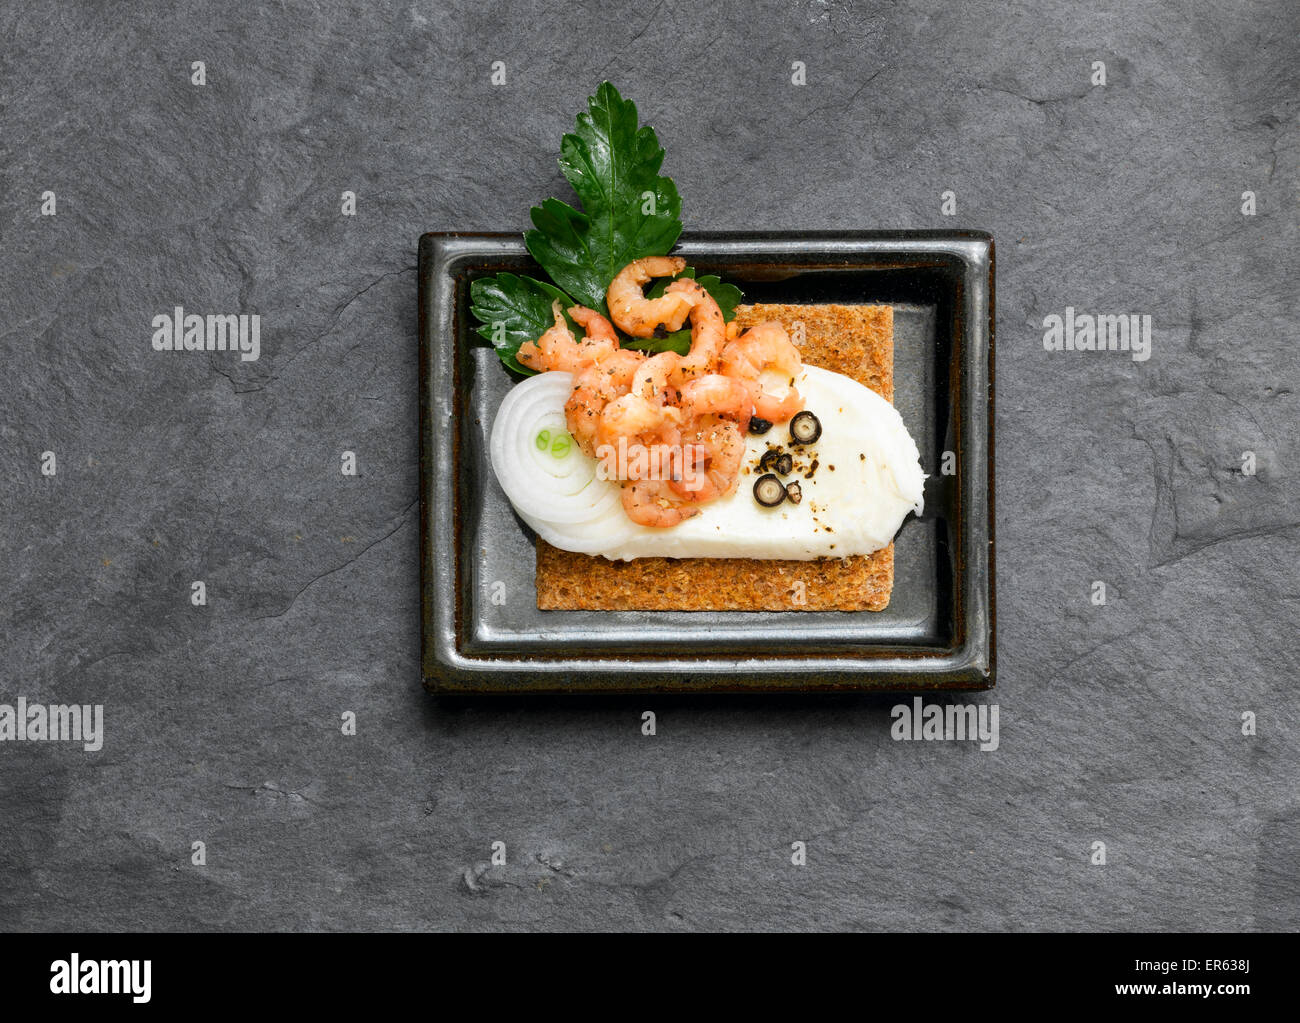 Canapé on a slate plate Stock Photo